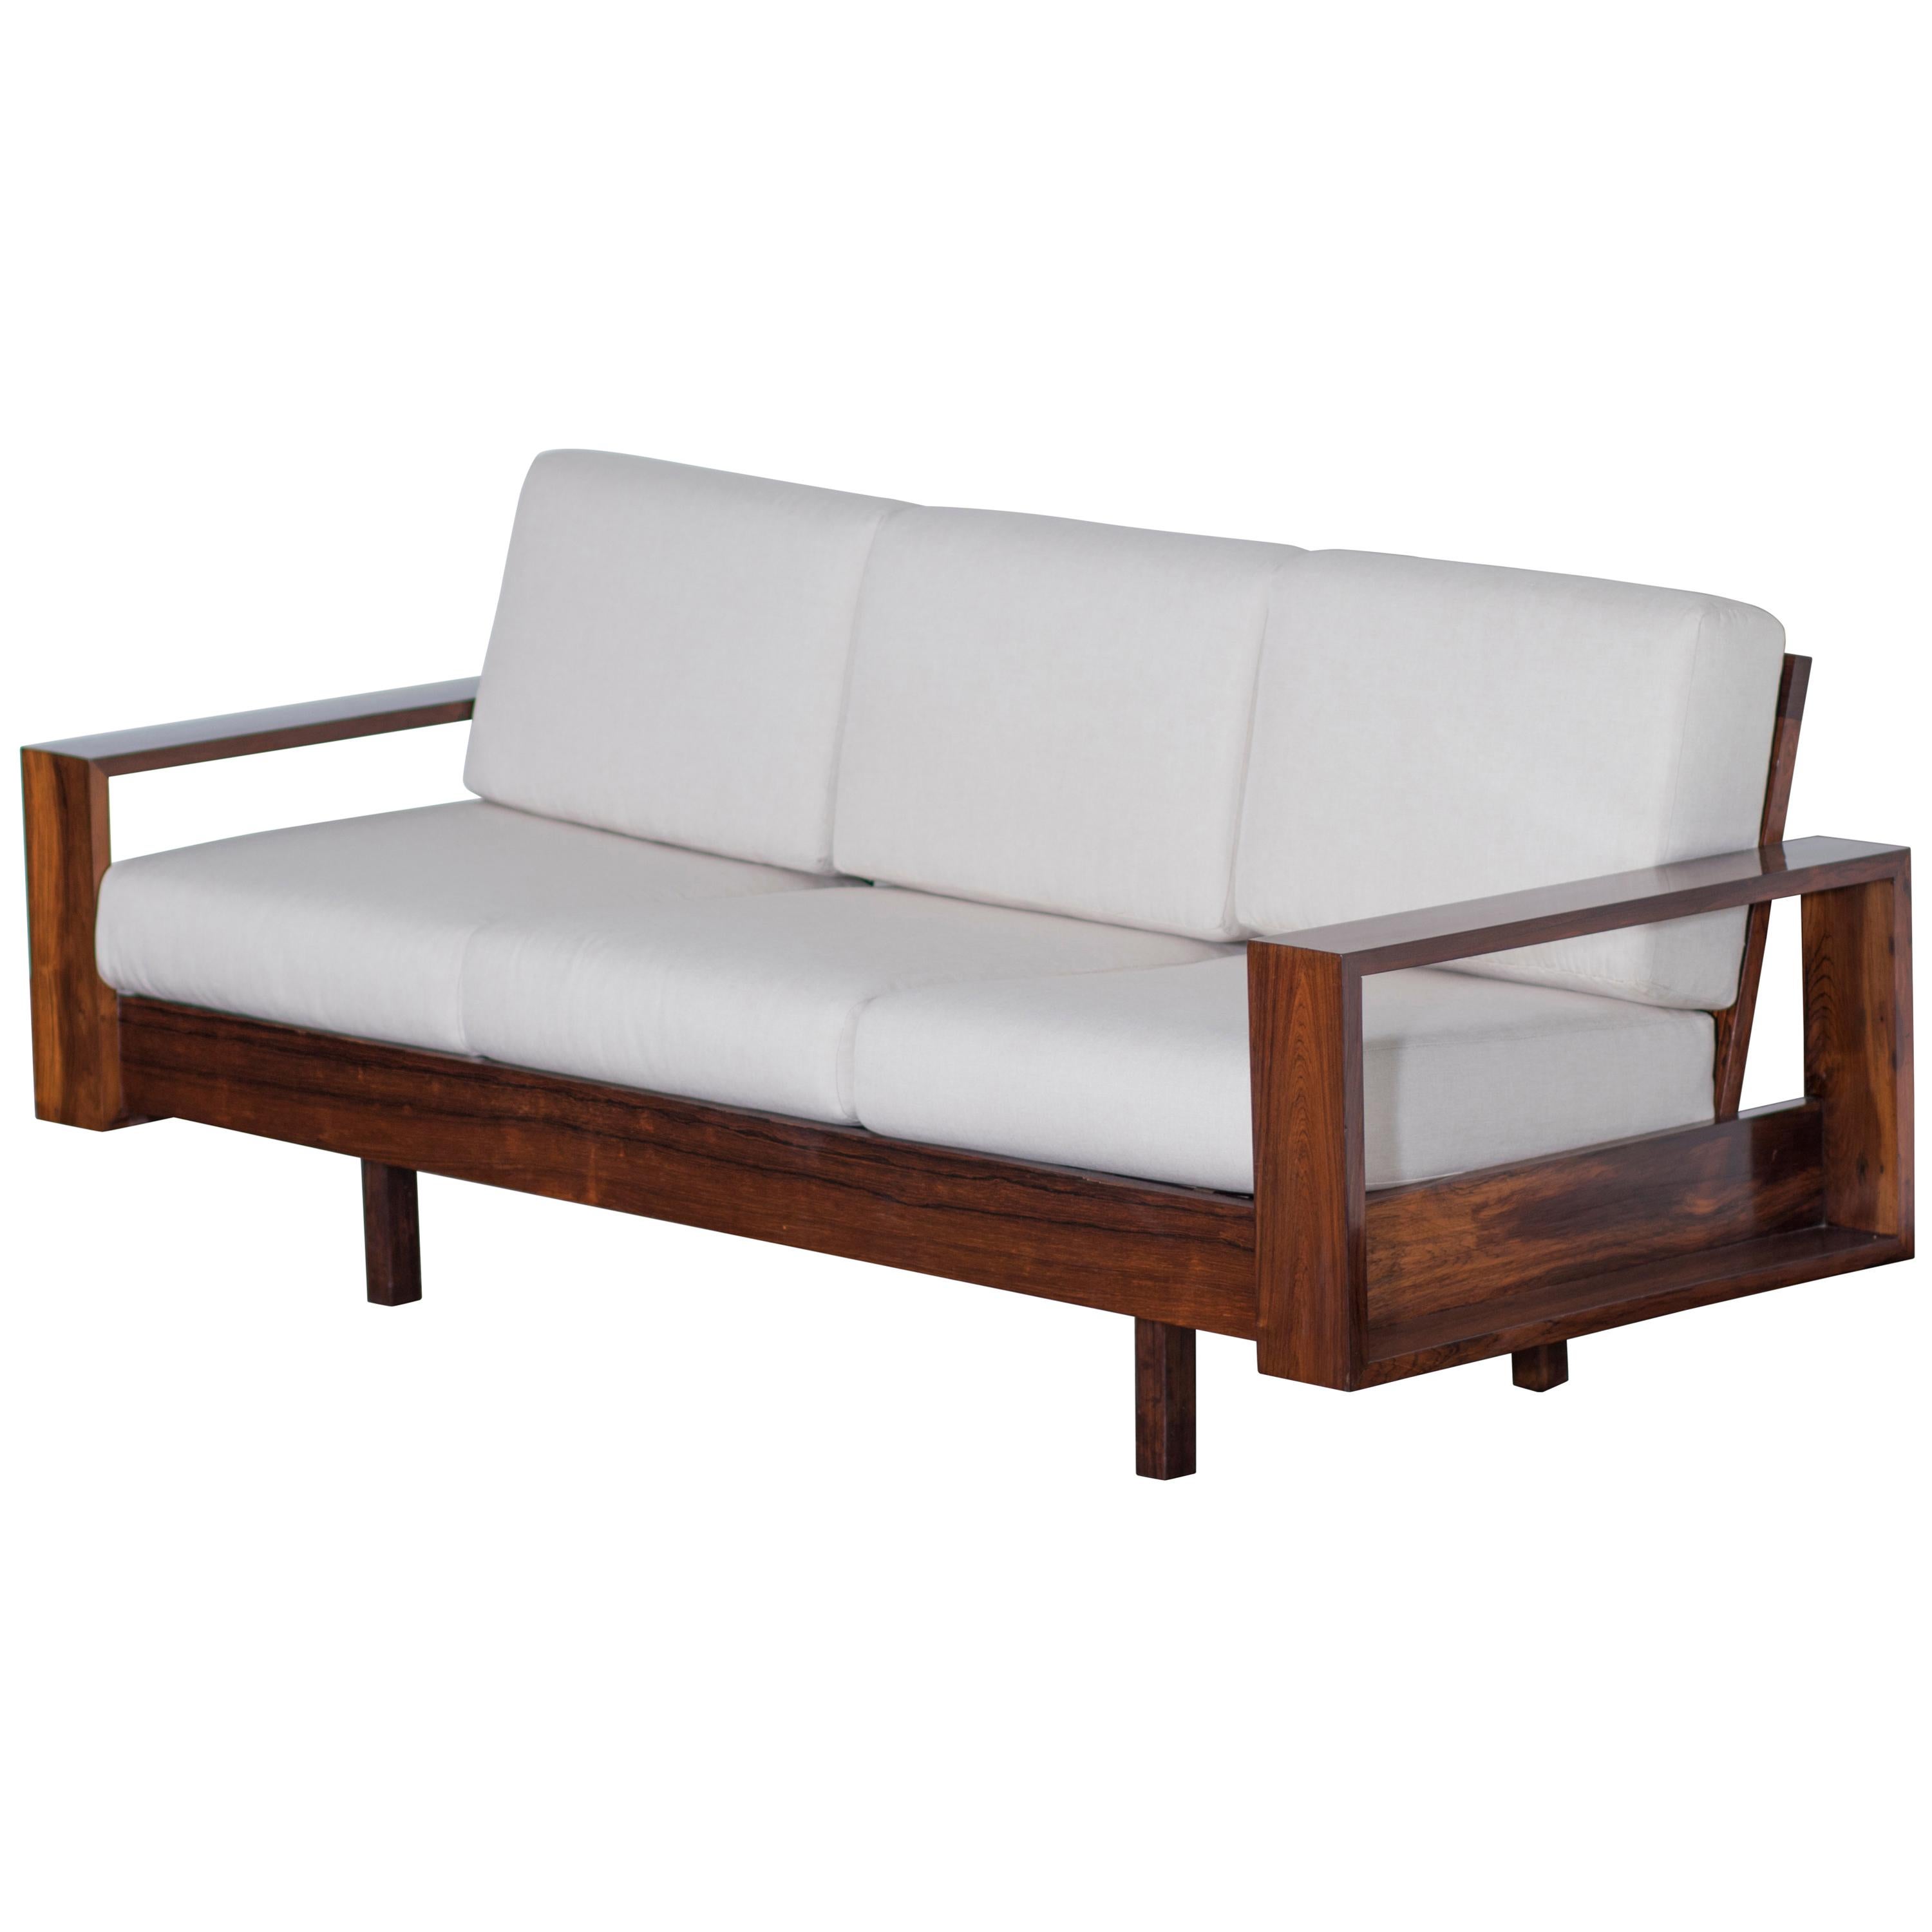 Brazilian Rosewood Sofa by Celina Decorações, Midcentury Brazilian Design, 1960s